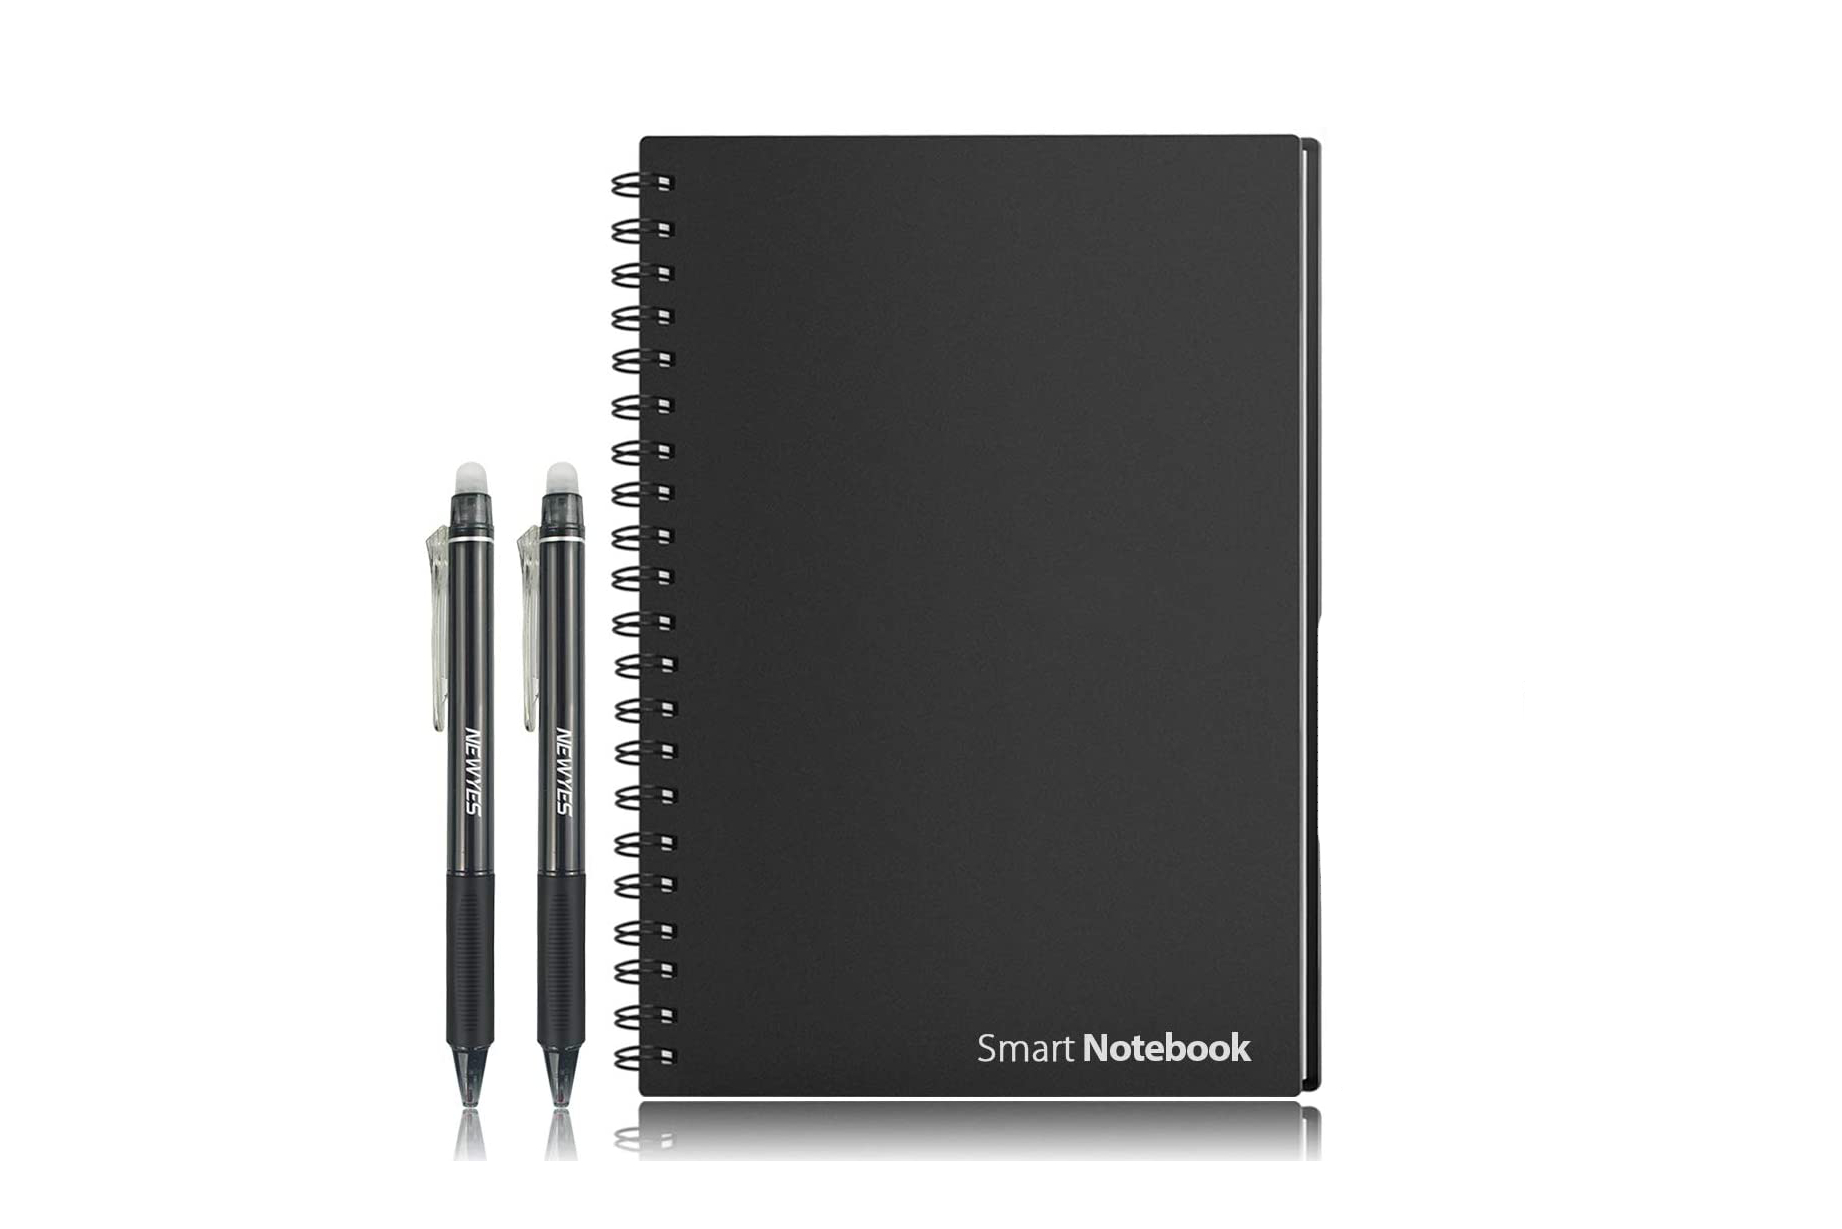 HOMESTEC Reusable Smart Notebook.